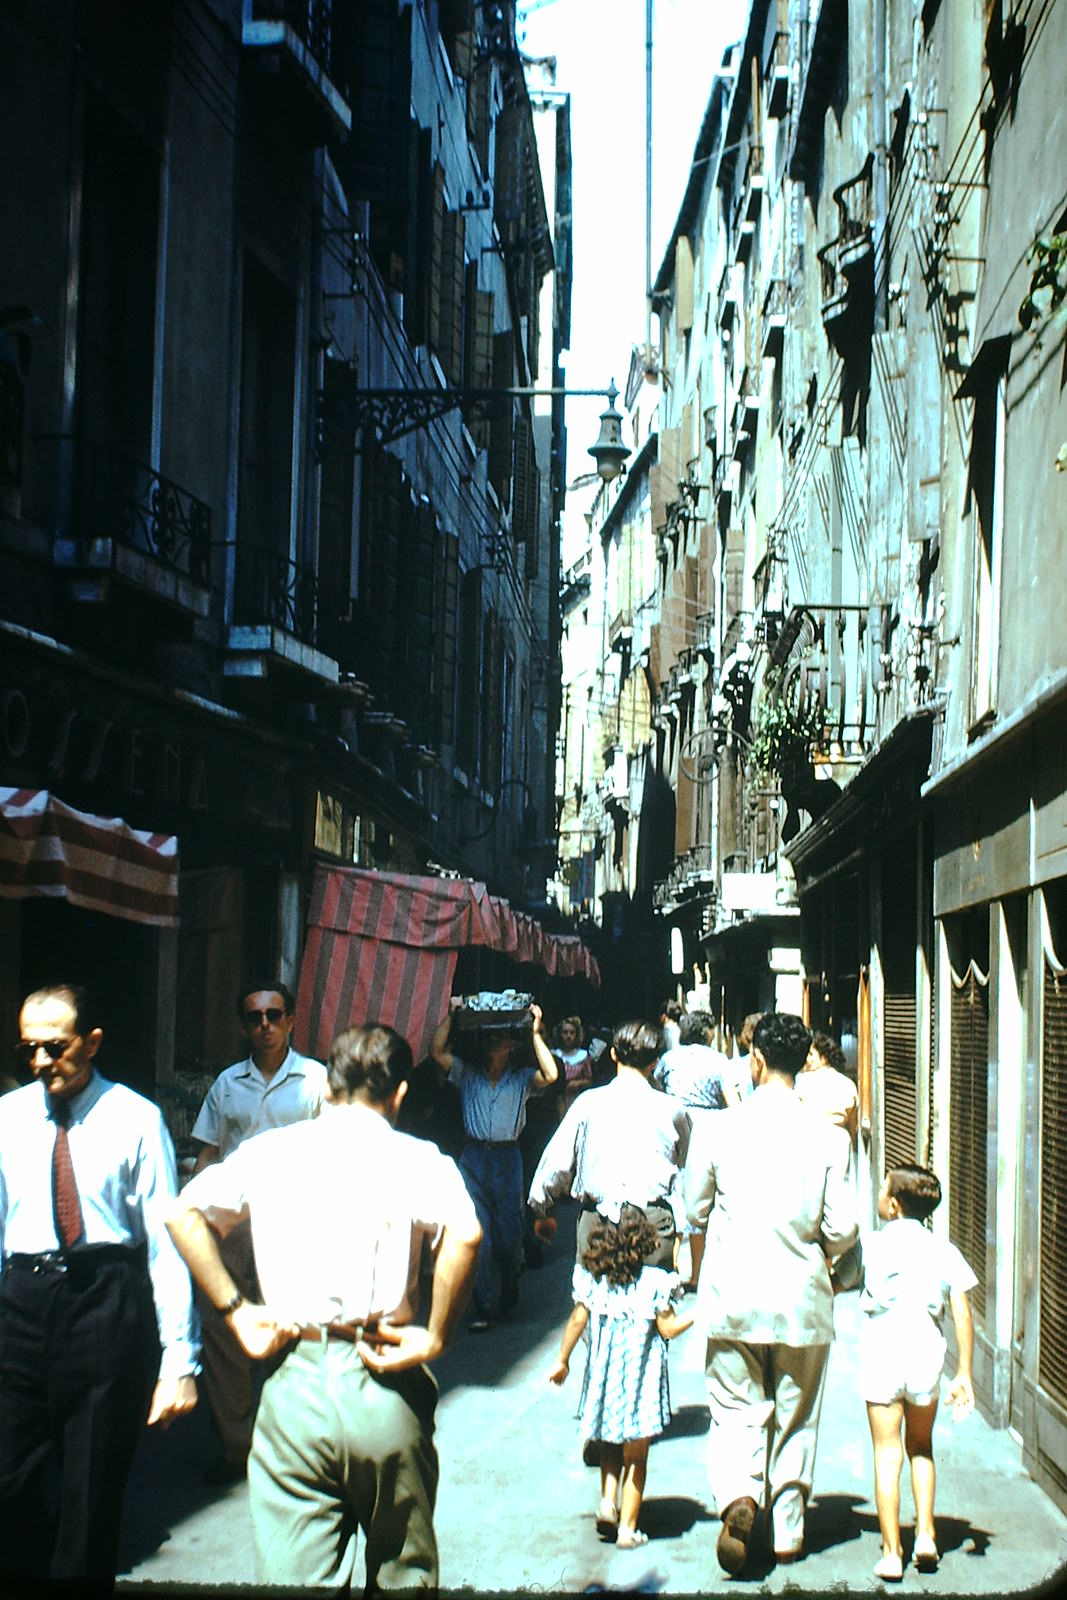 Via 22 Marzo- Venice, Italy, 1954.